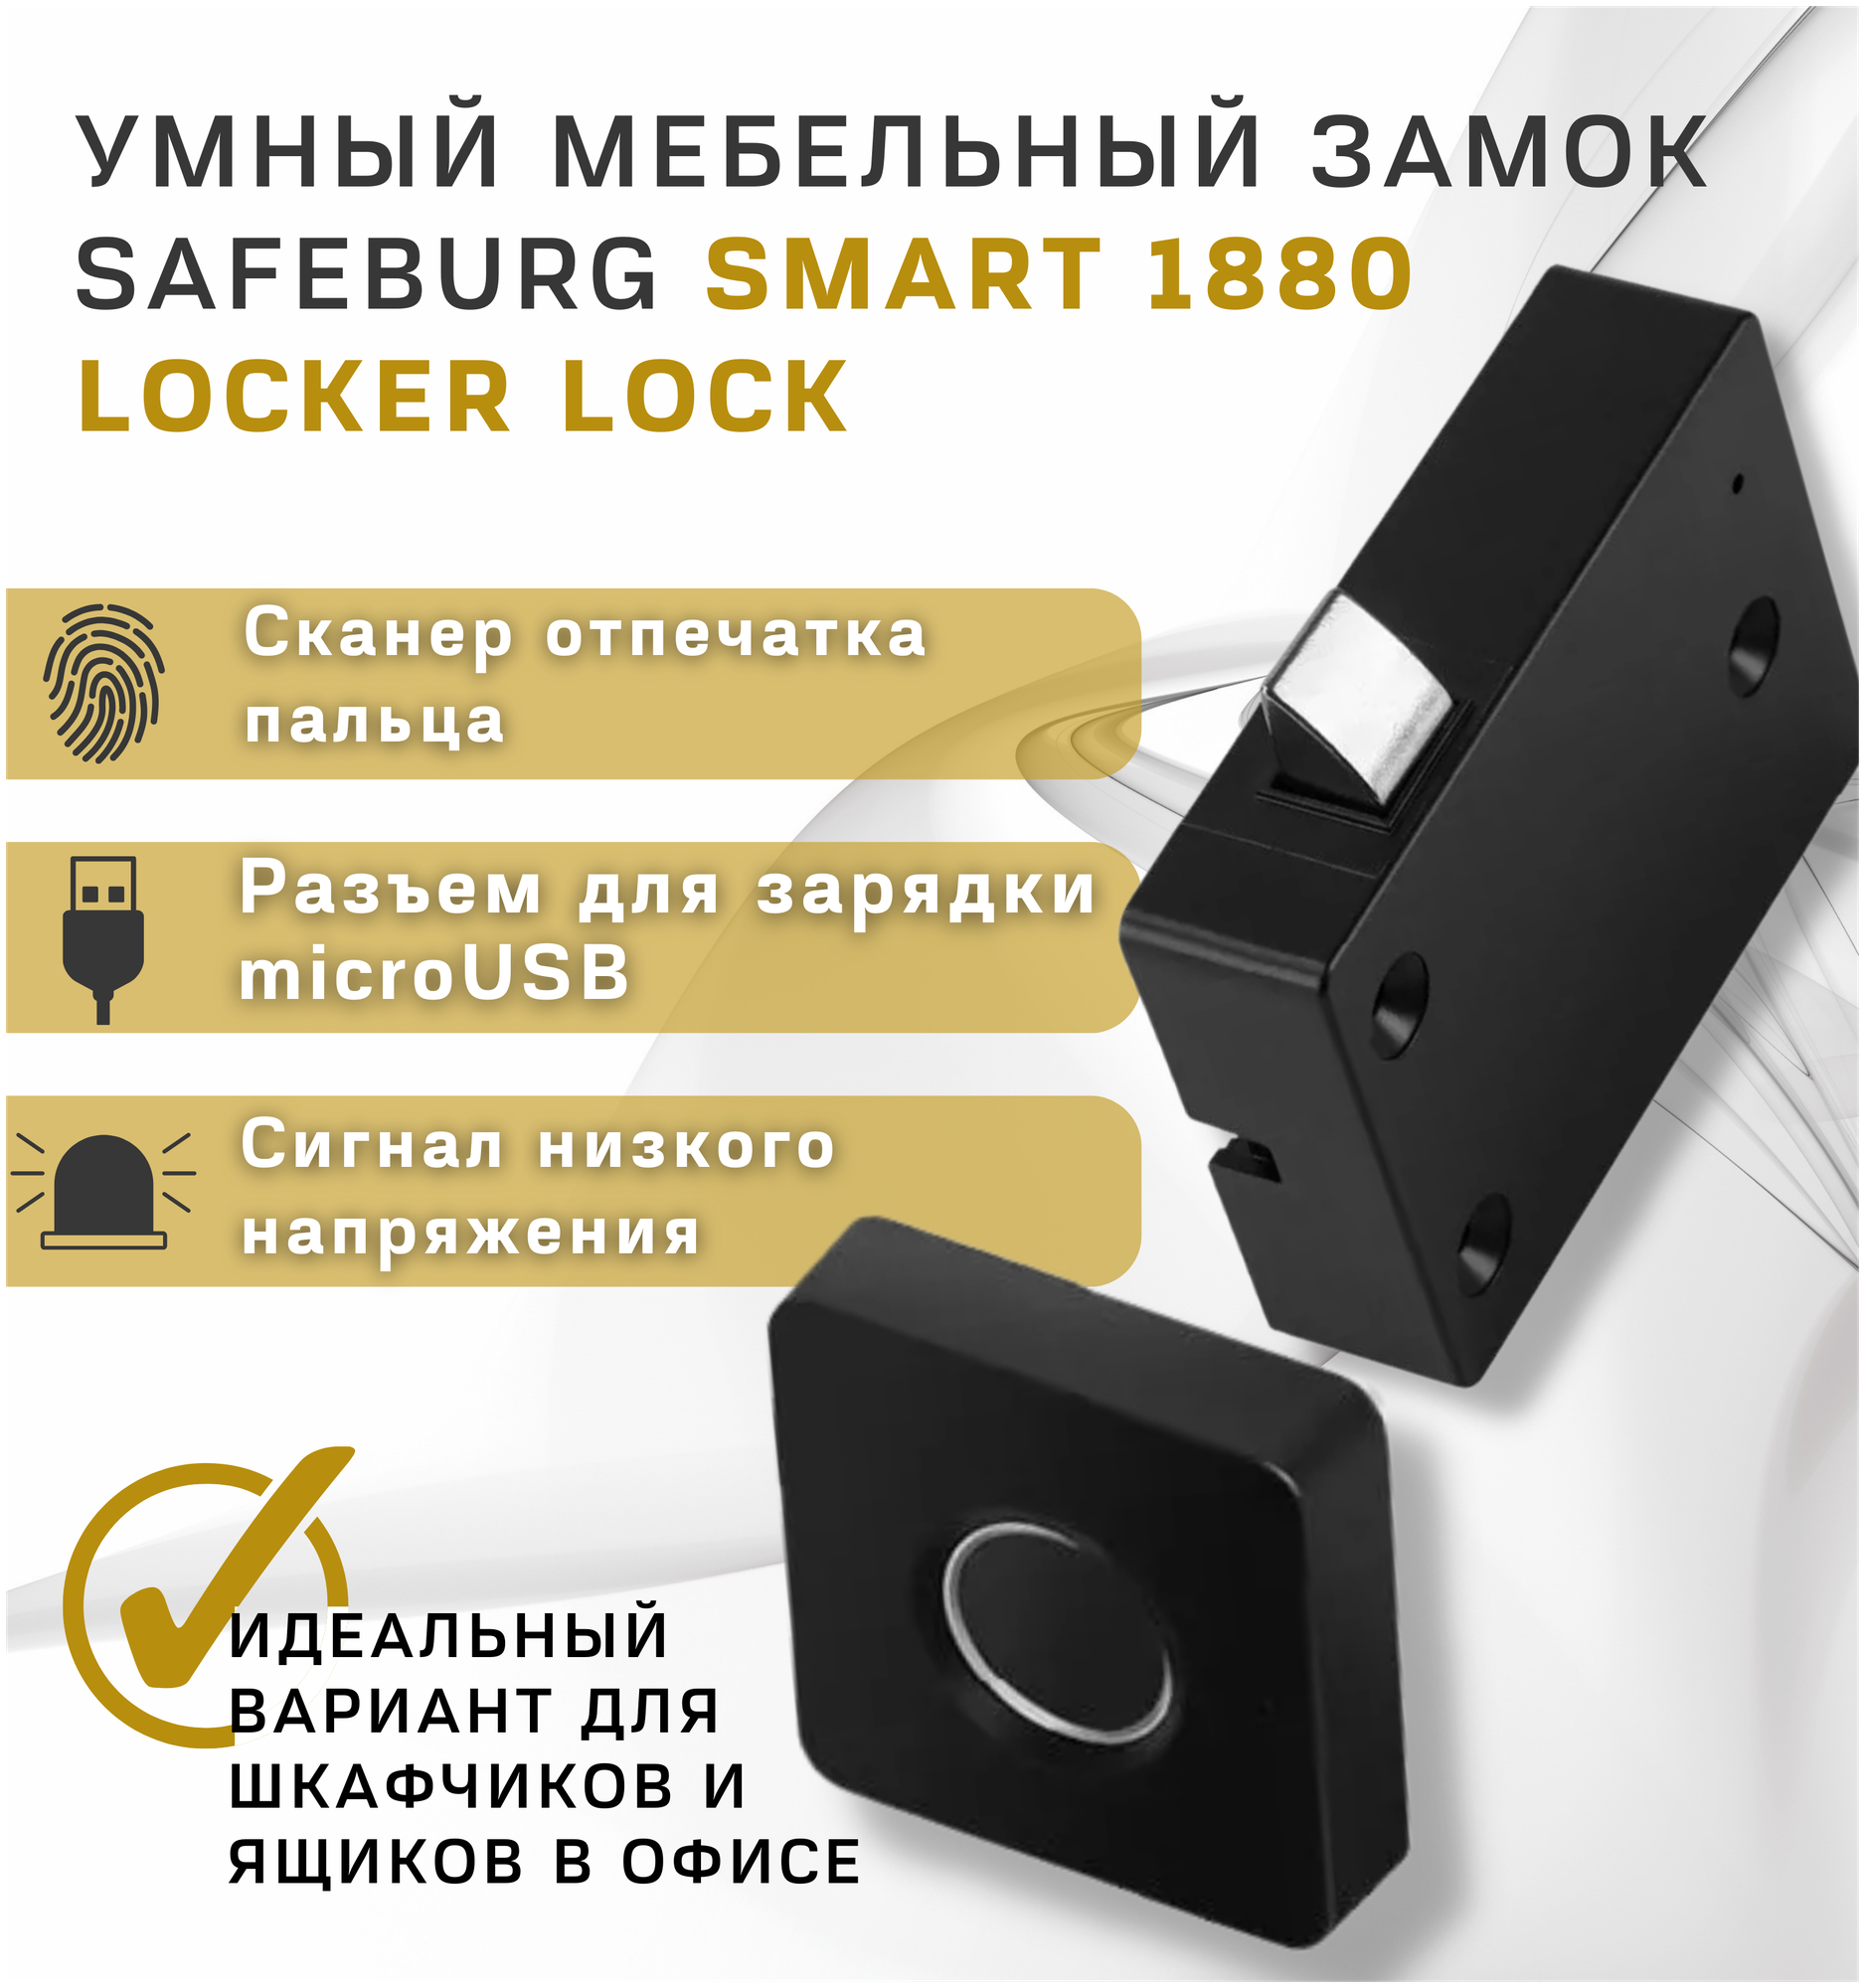 Умный дверной электронный замок SAFEBURG SMART 1880 Locker Lock